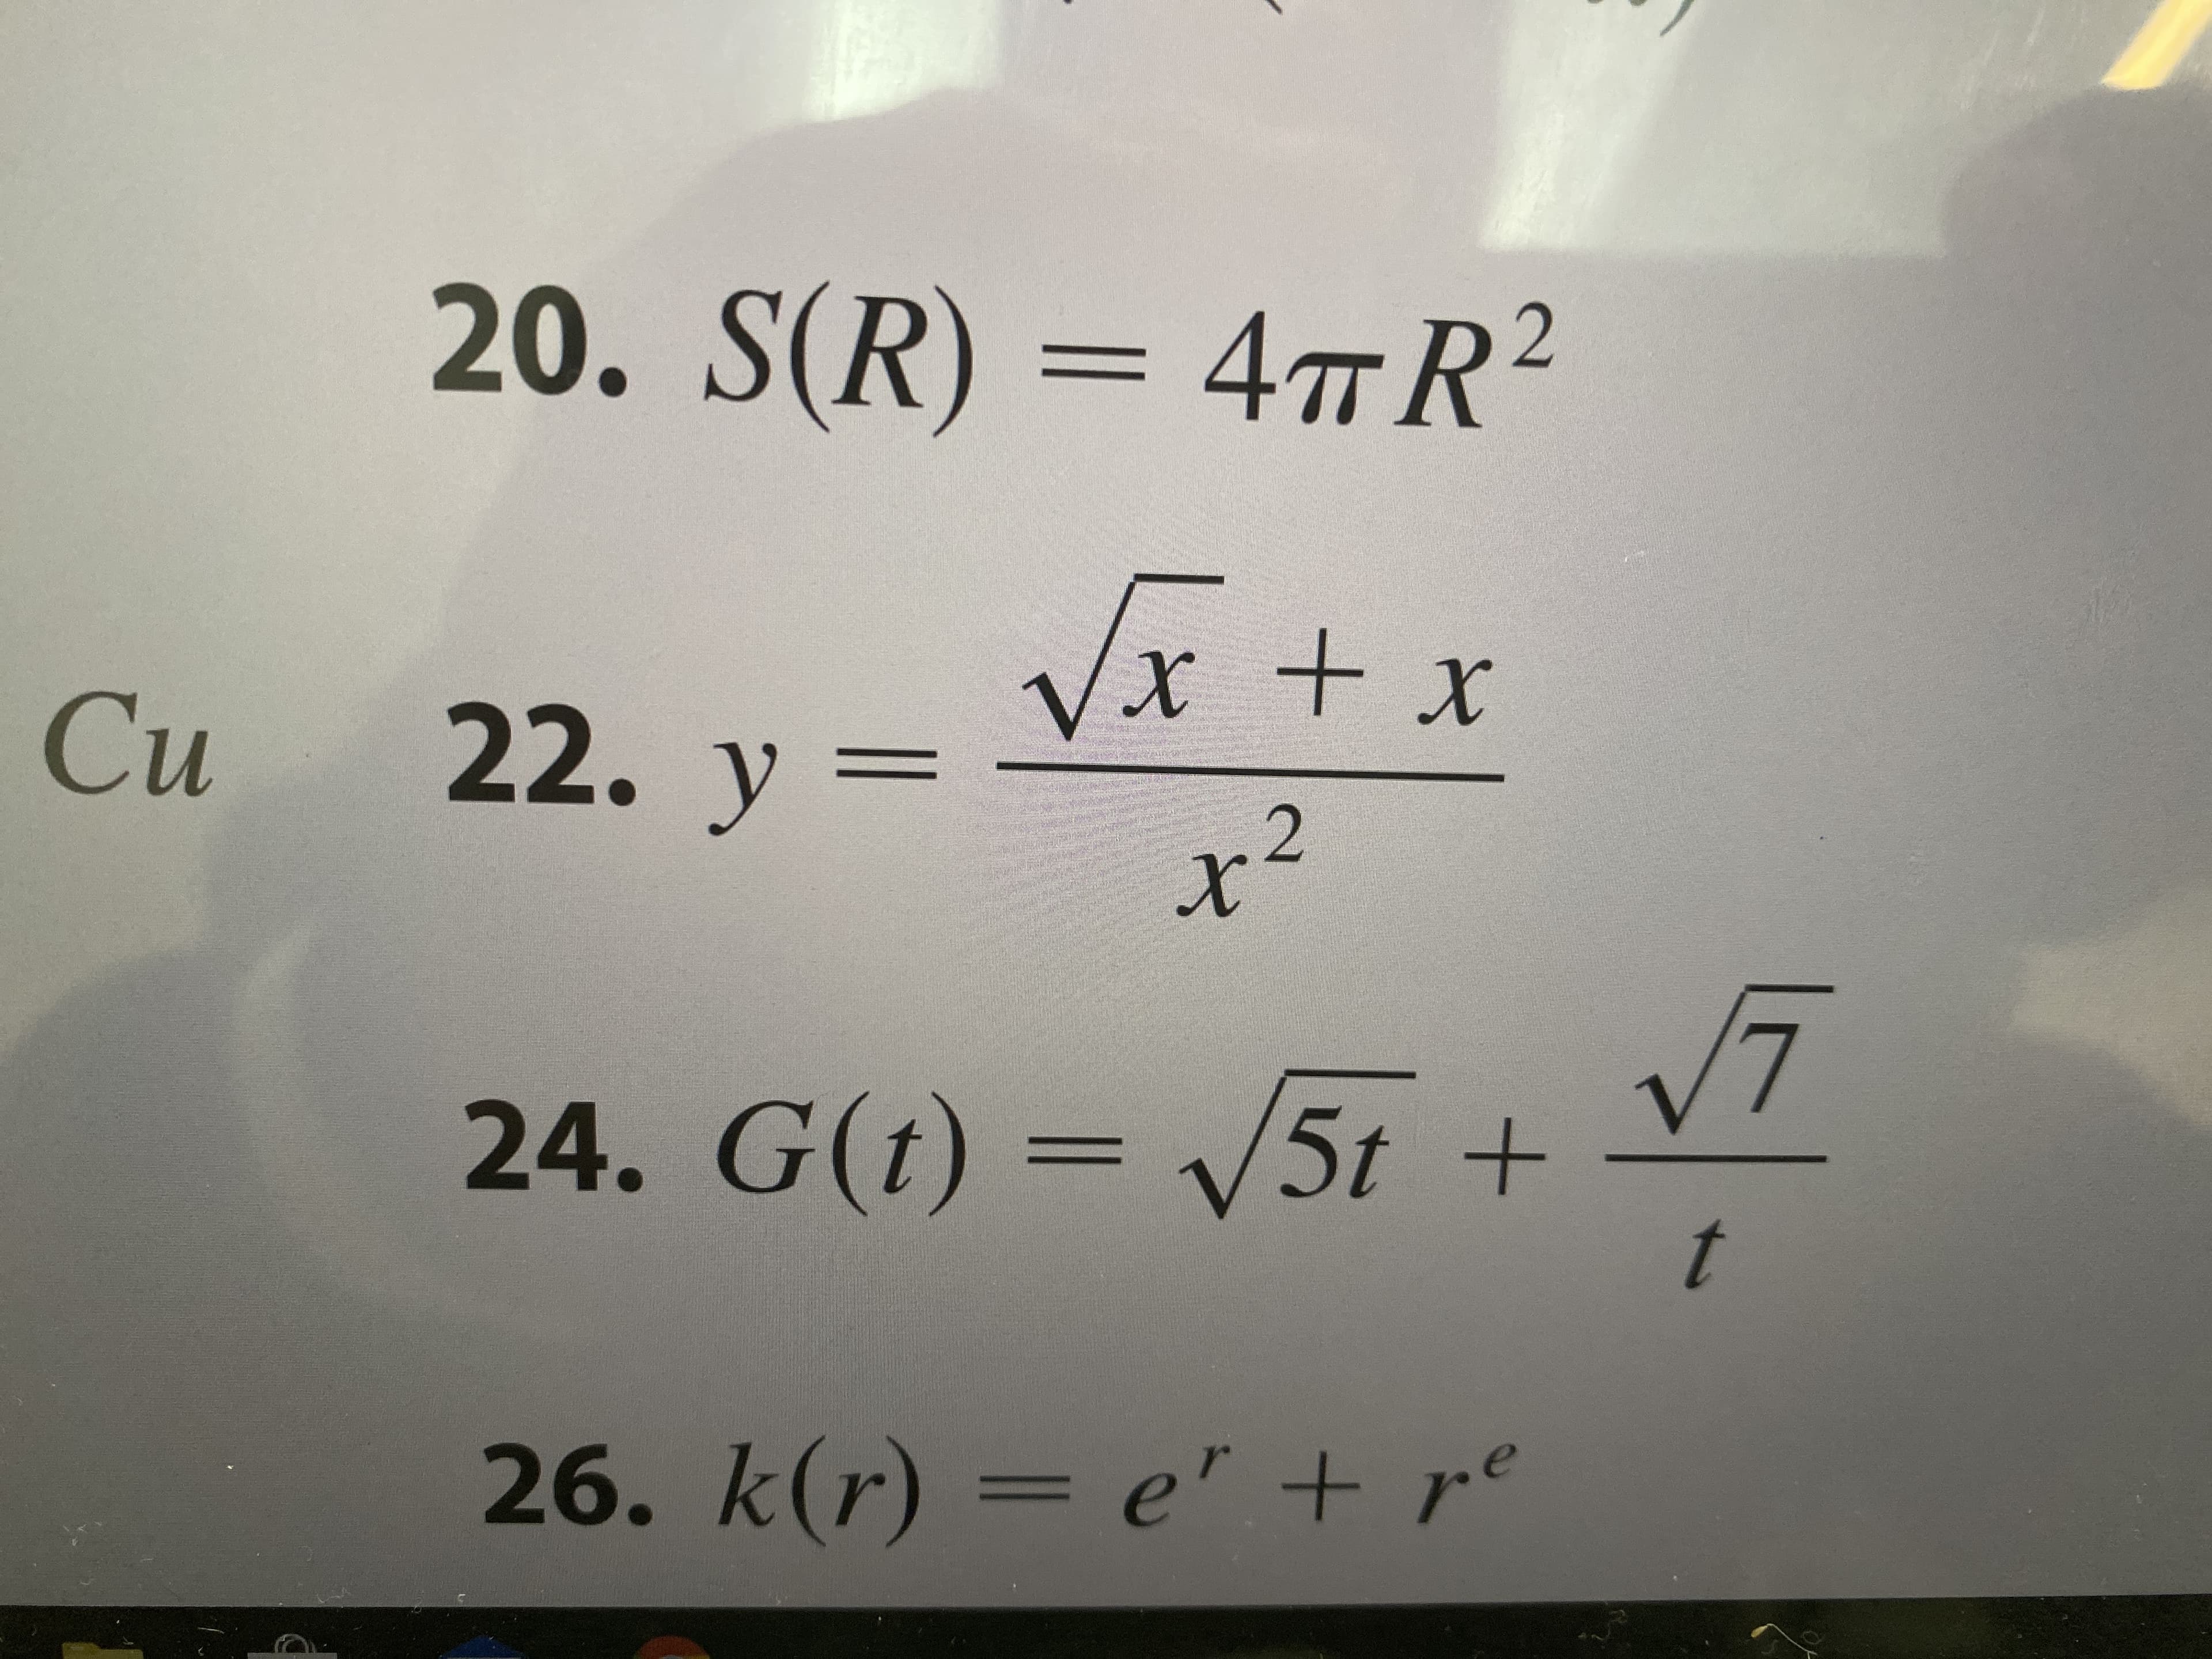 20. S(R) = 4TR²
т.
VX + x
Си
22. y =
x²
24. G(t) = 5t +
t
26. k(r) = e' + r°
